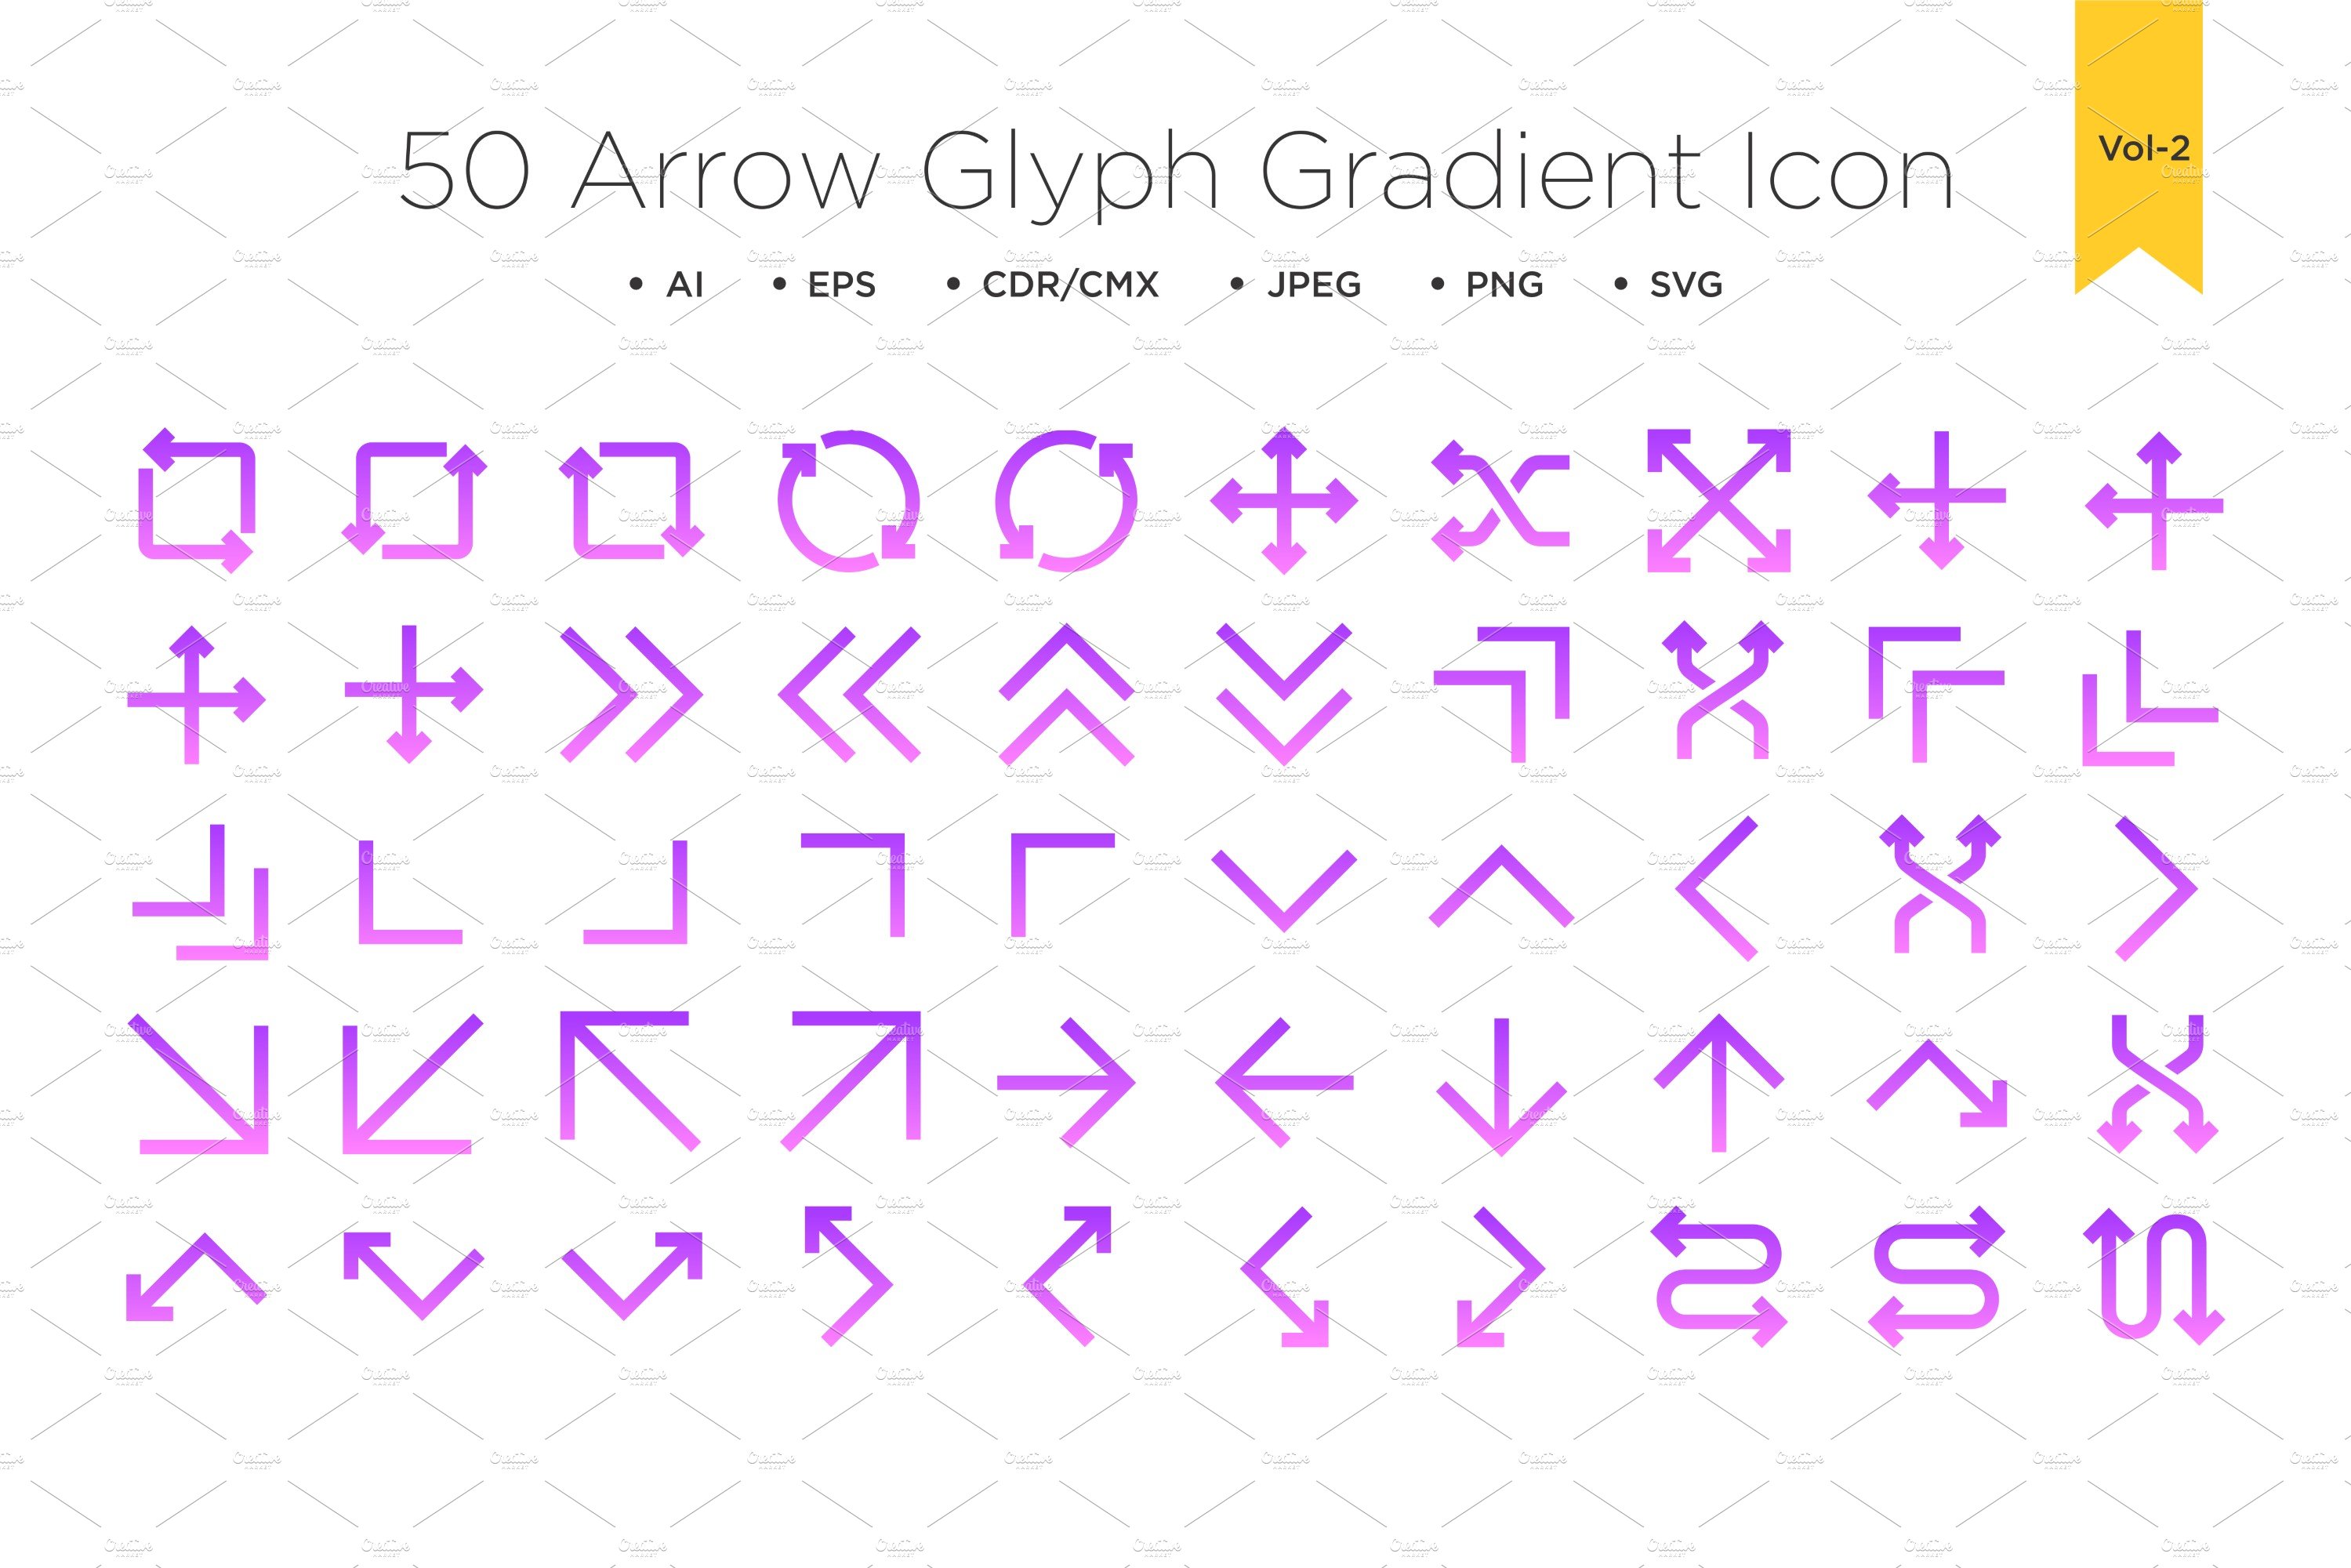 50 Arrow Glyph Gradient Icon Vol 2 cover image.